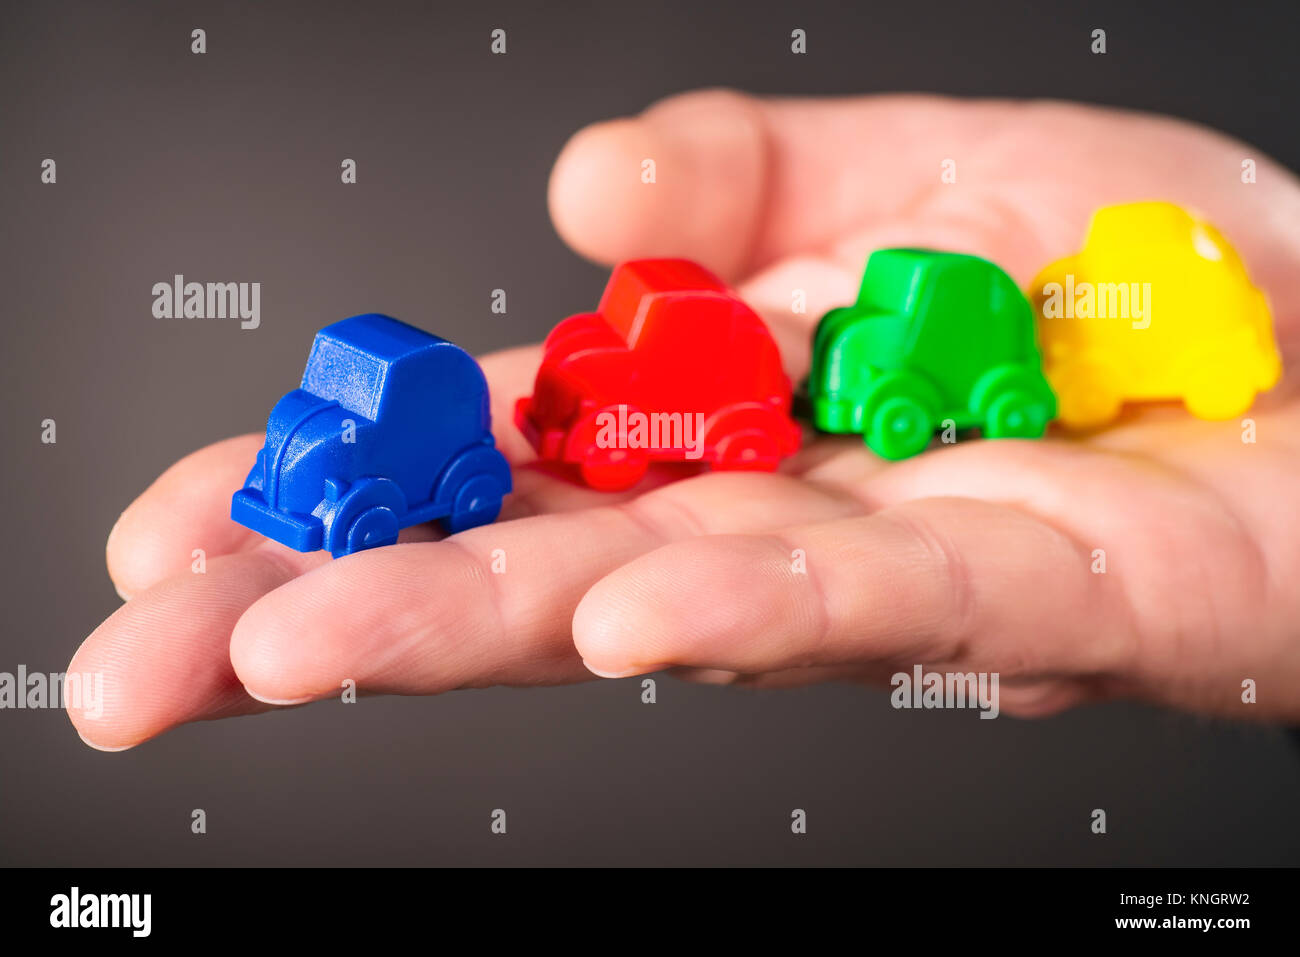 Spielzeugautos in den Farben Blau, Rot, Grün und Gelb sind auf einem Palm durchgeführt. Stockfoto